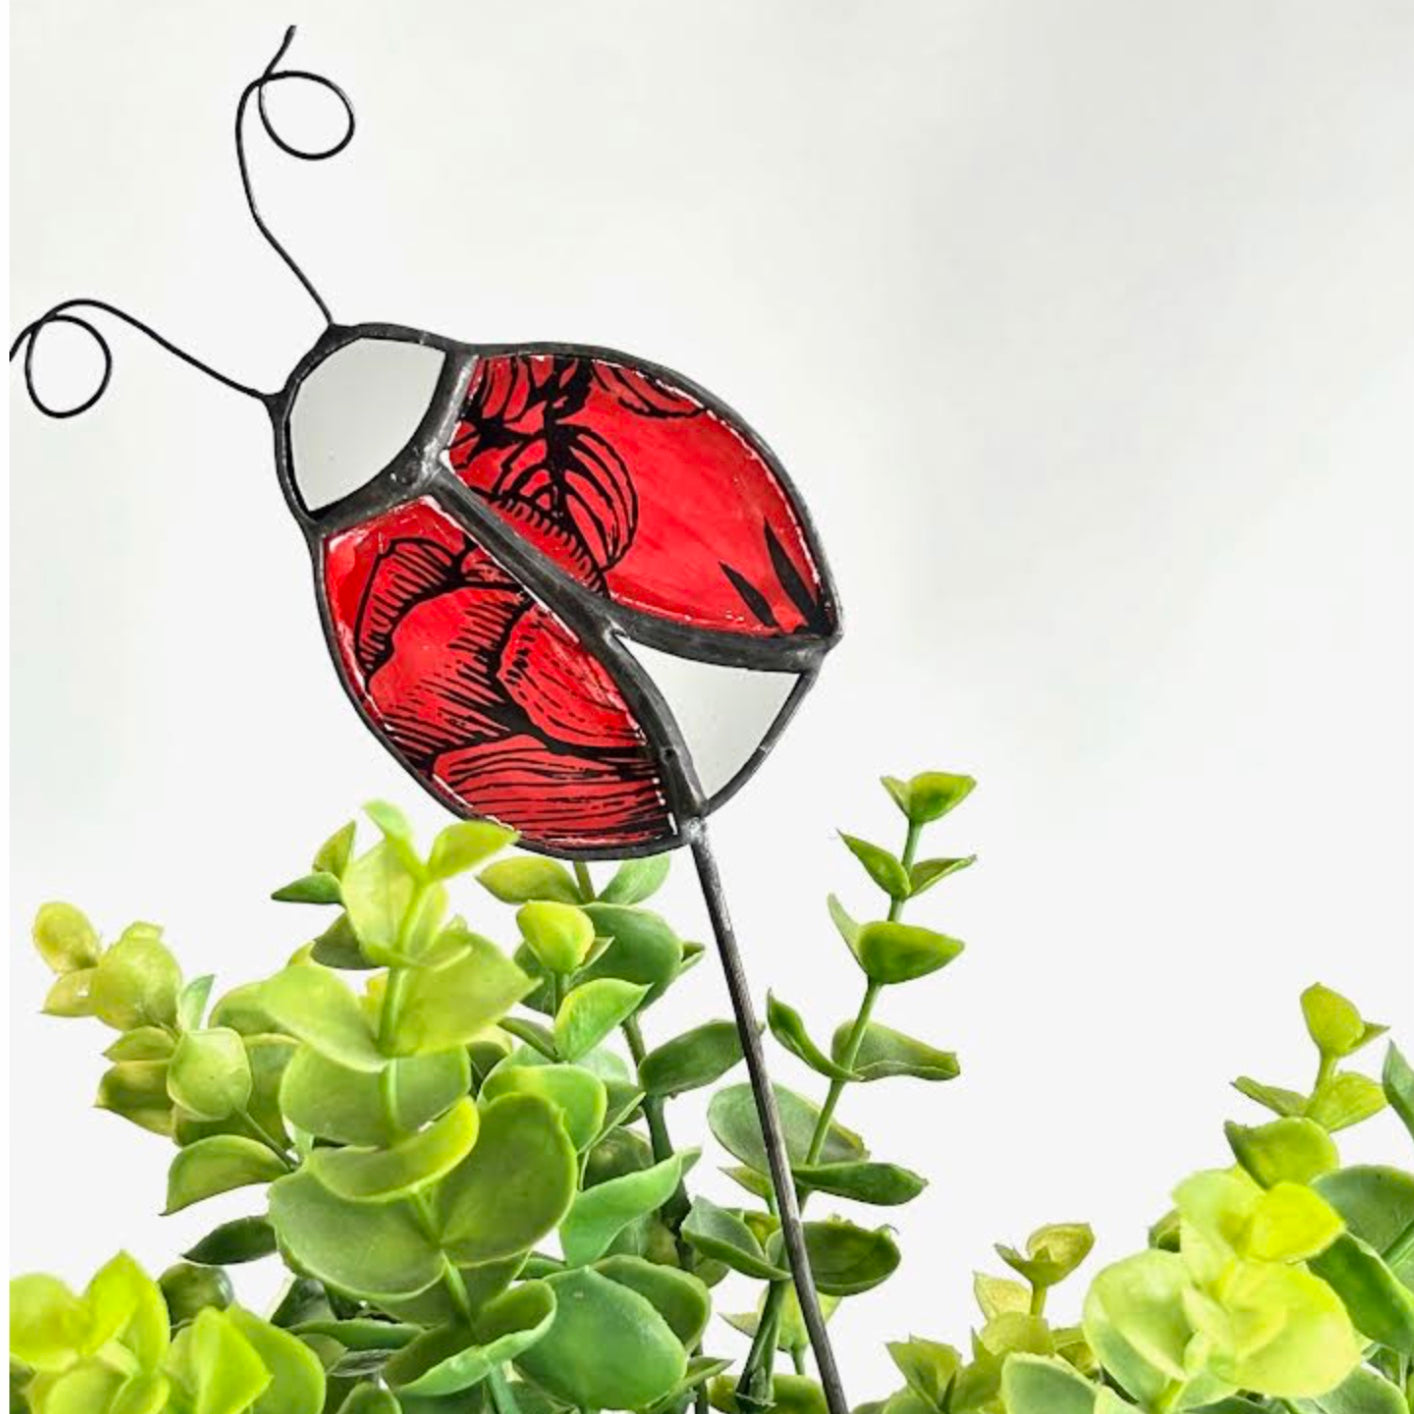 Handmade Glass Suncatcher Garden Plant Stakes